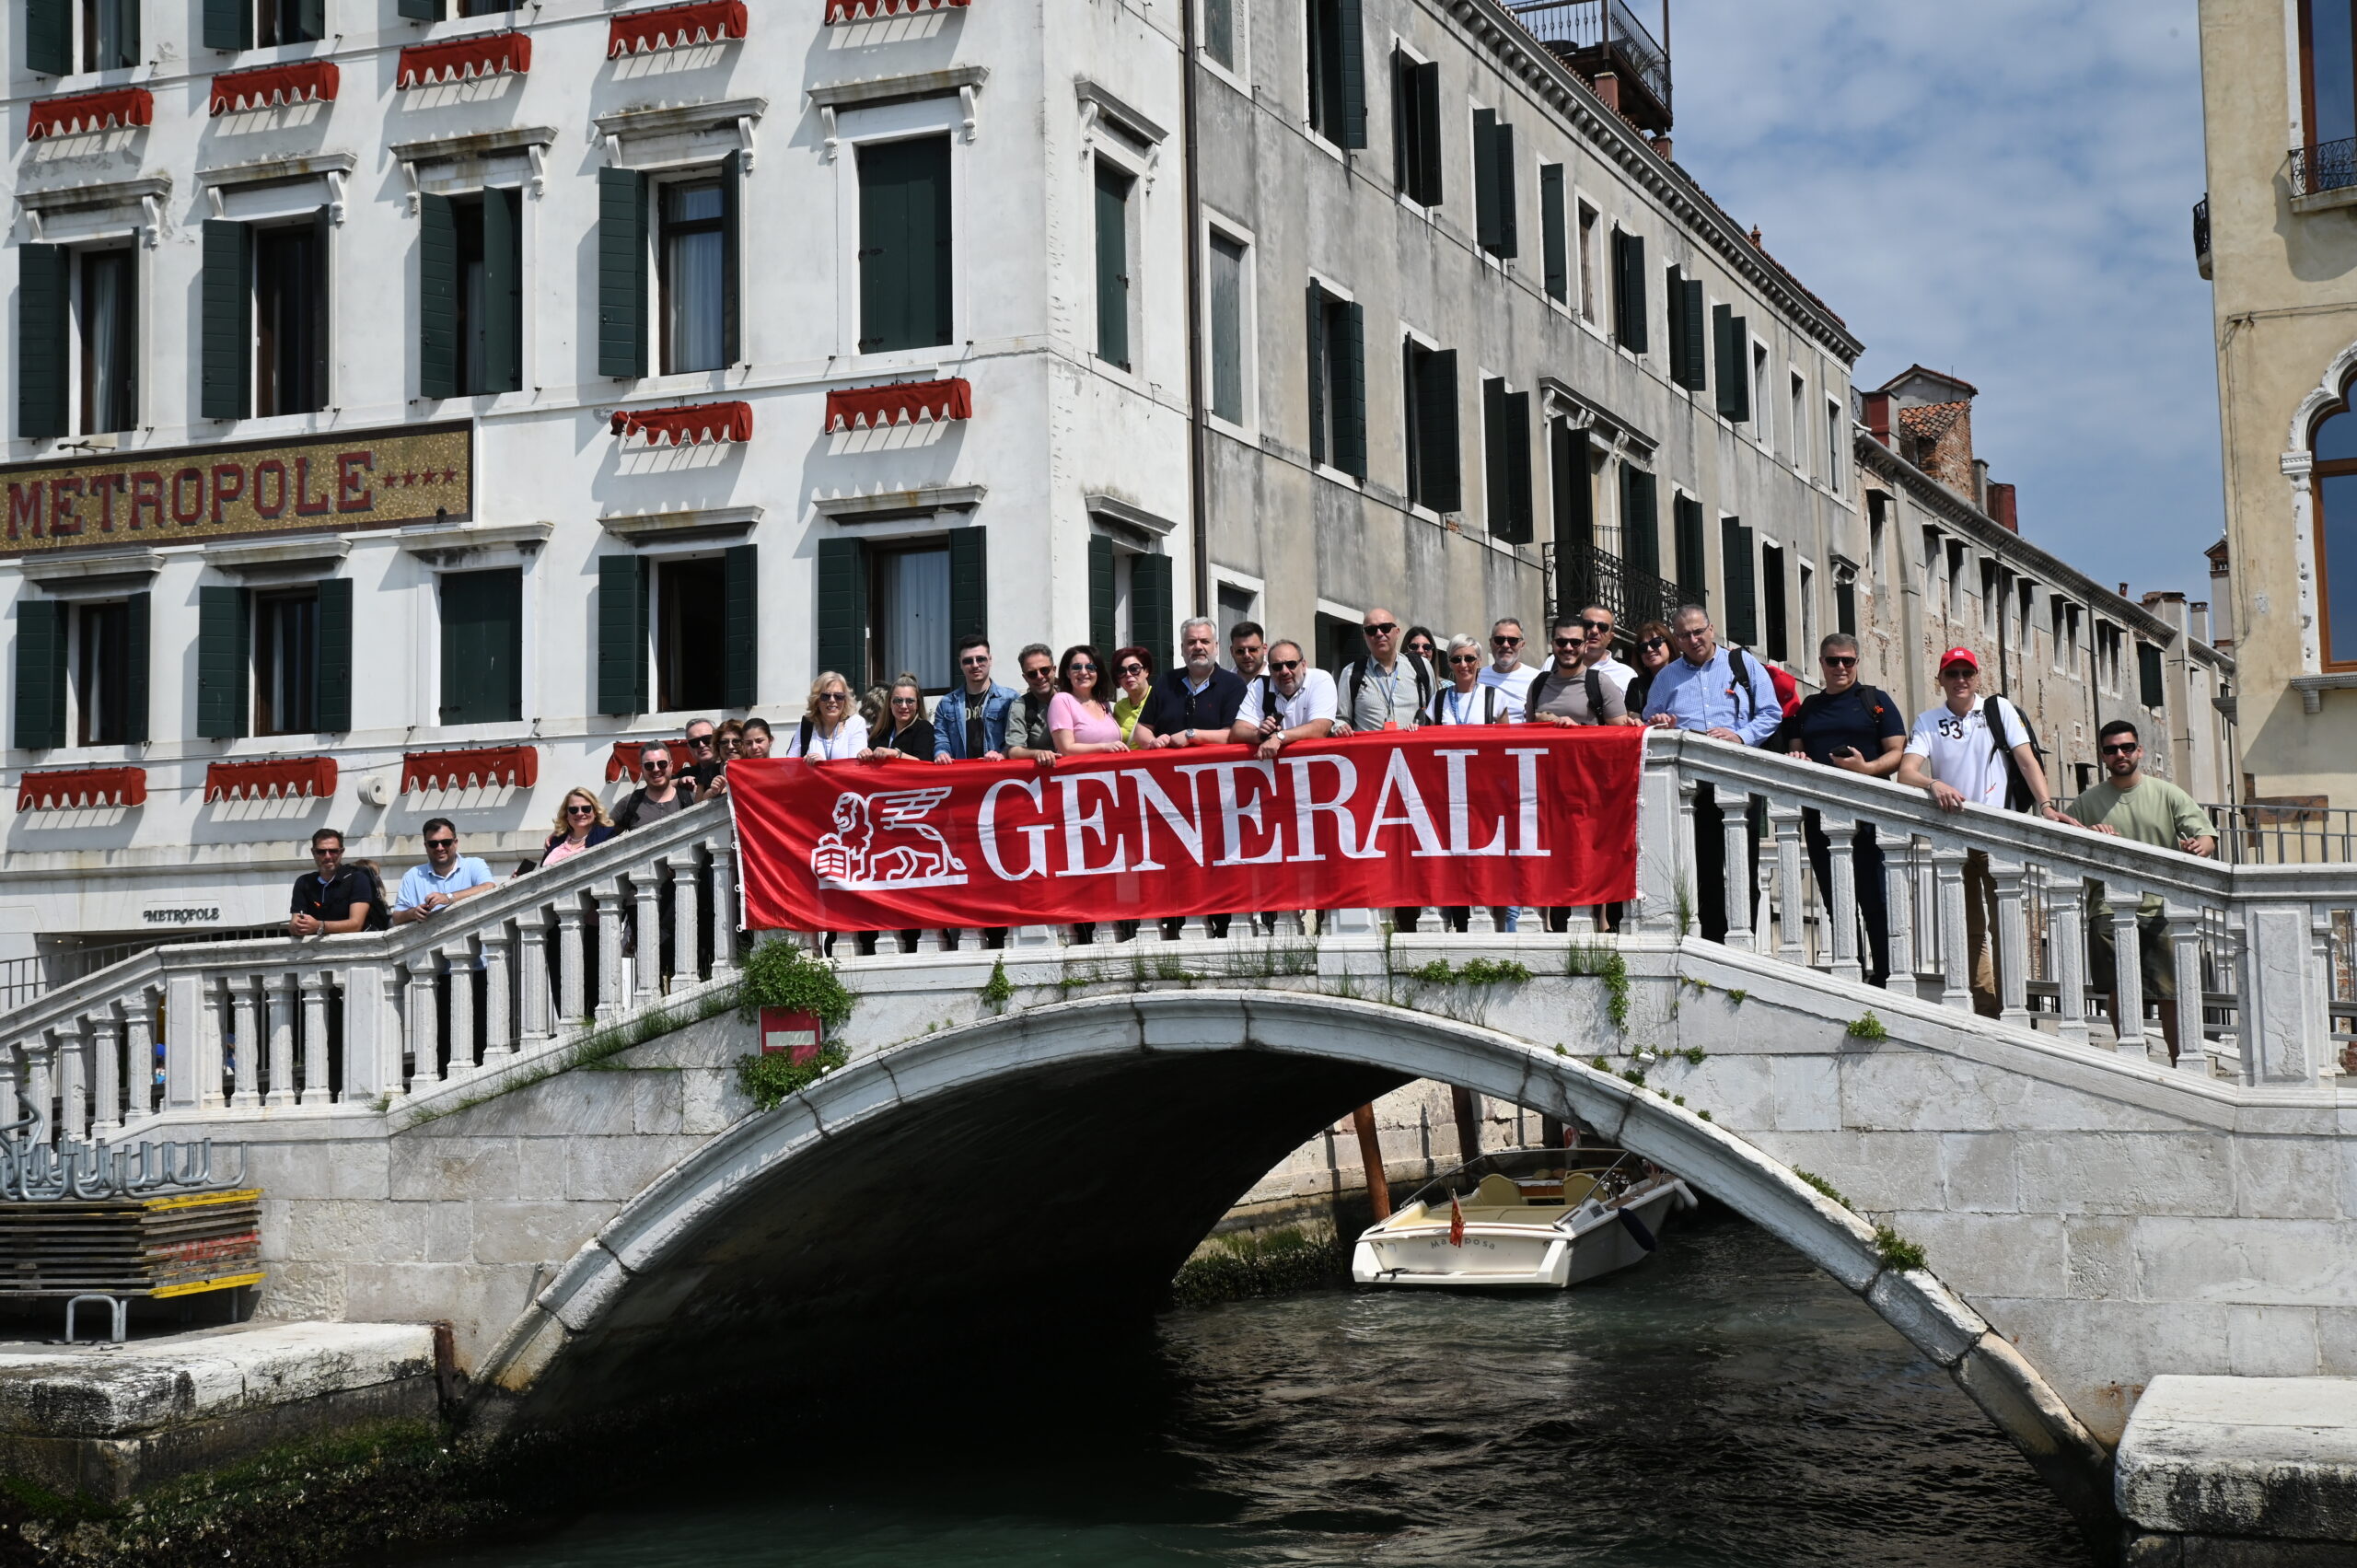 Στη Βενετία το Αποκλειστικό Δίκτυο Συνεργατών της Generali